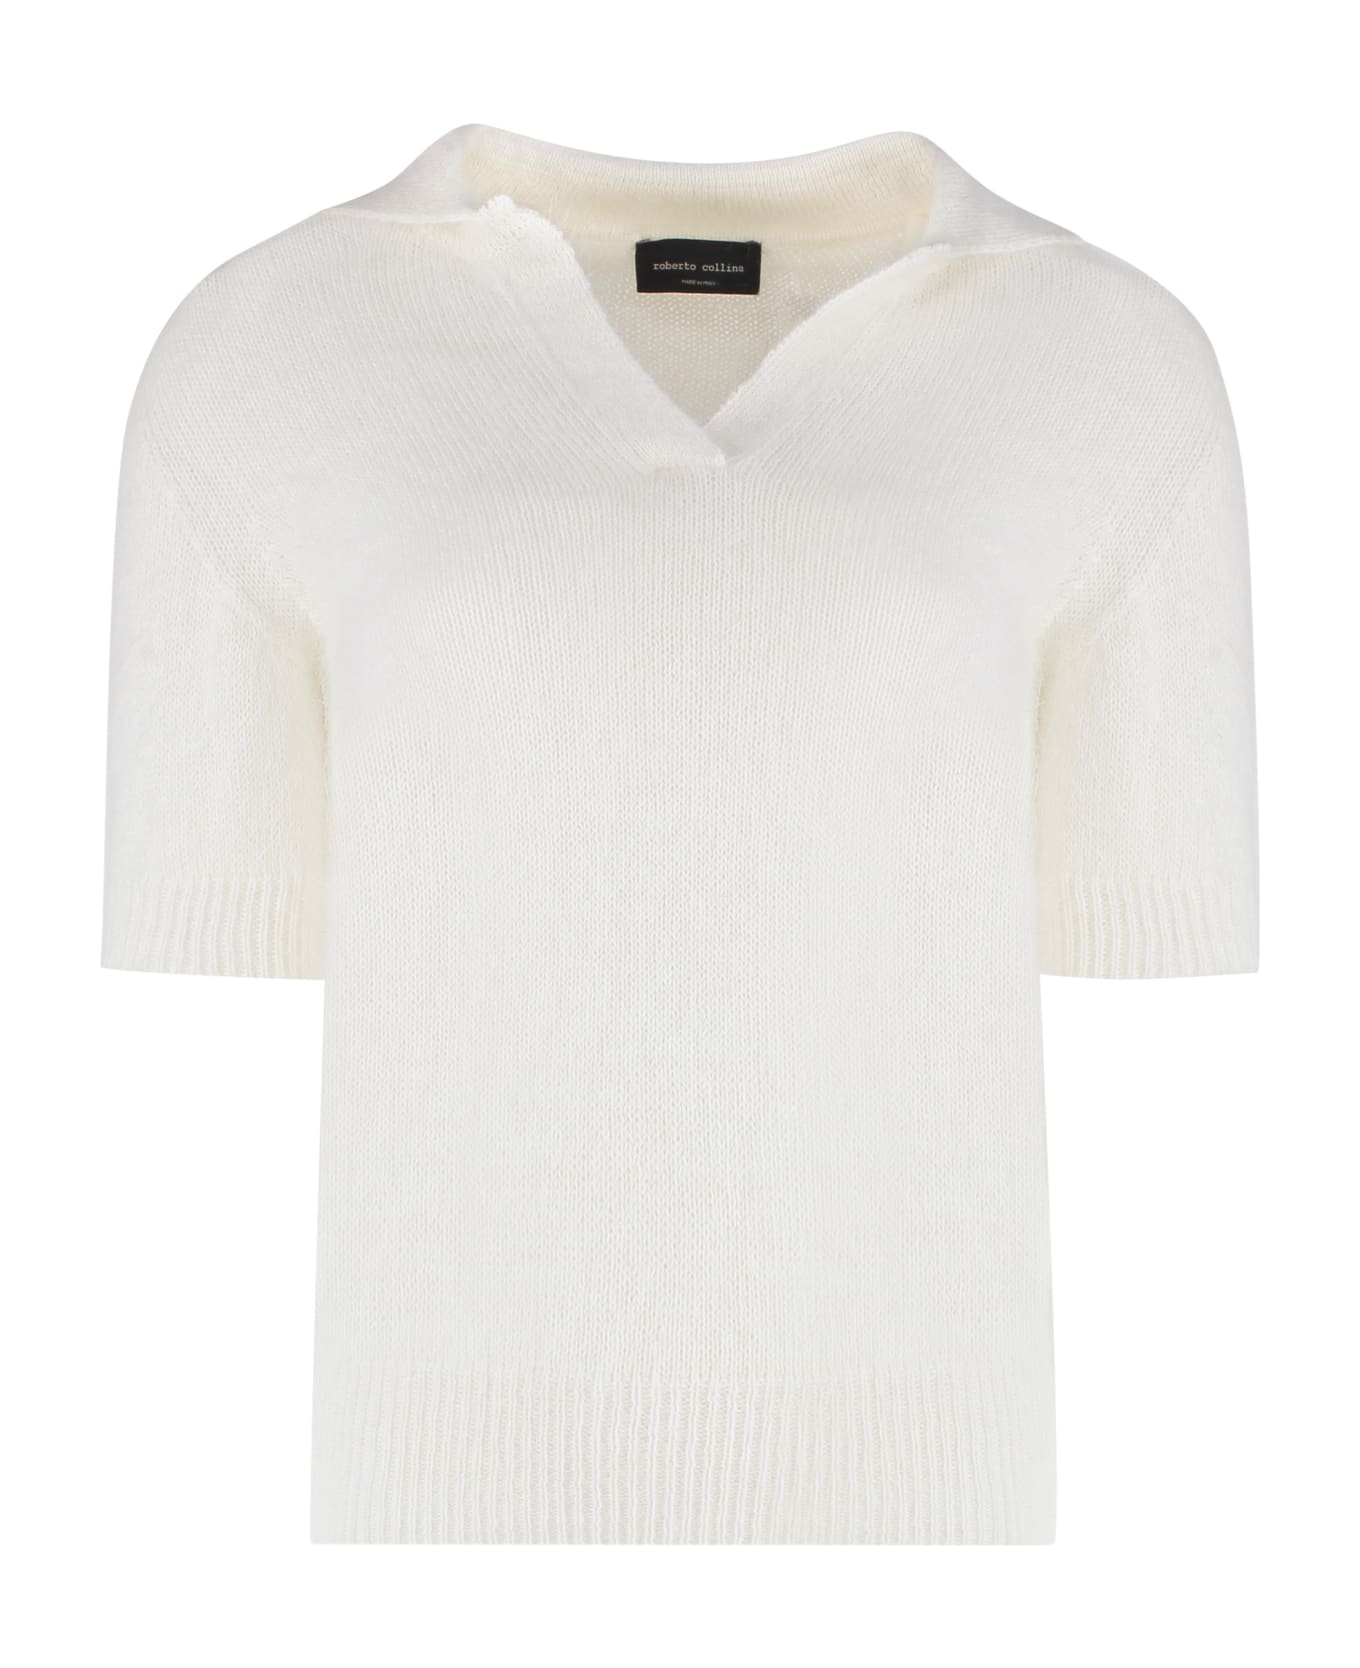 Roberto Collina Short Sleeve Sweater - White